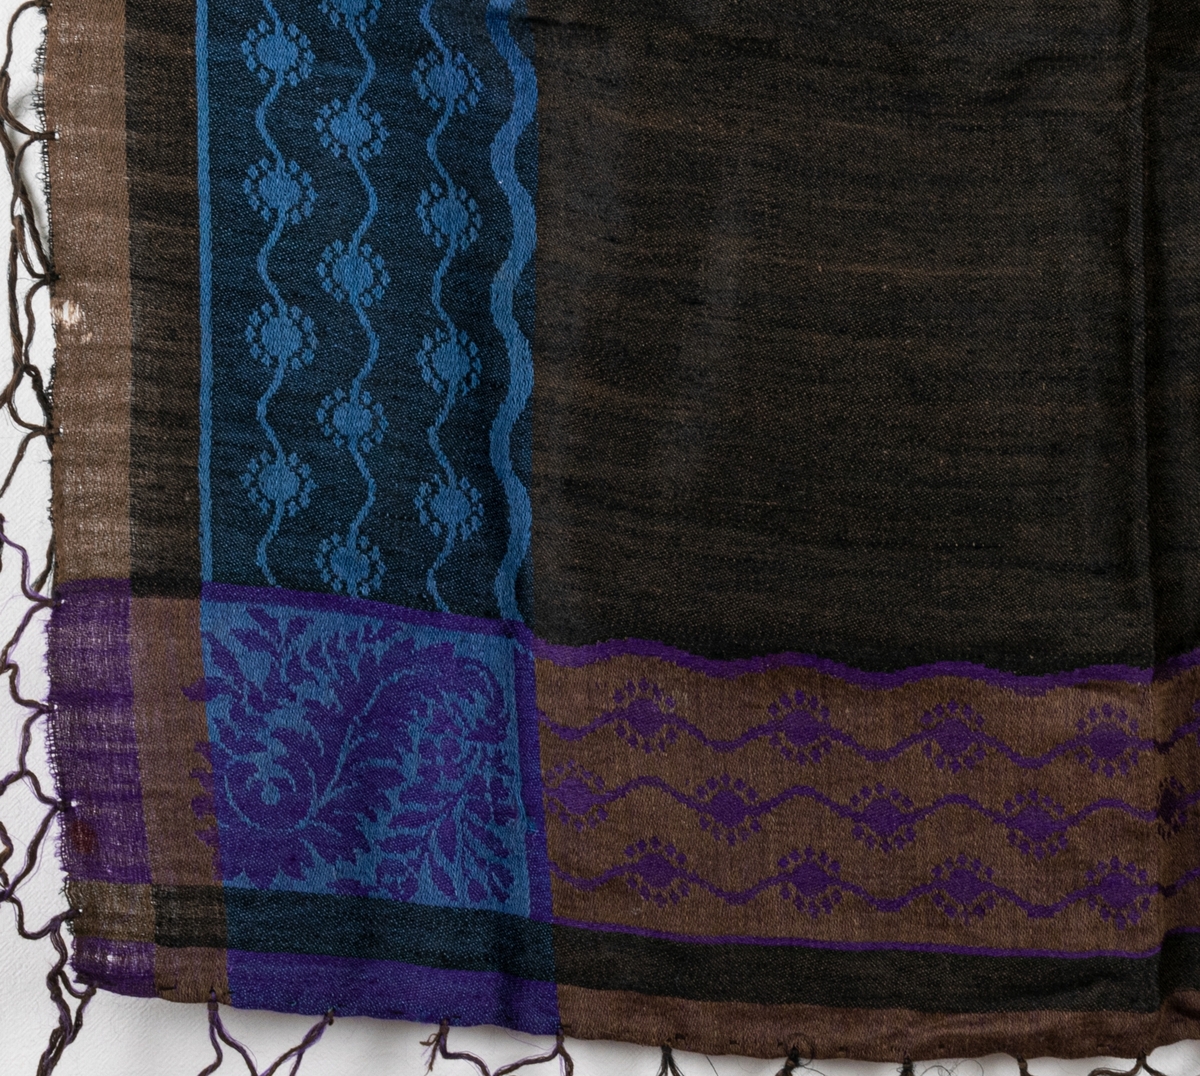 Mångfärgad yllesjal med svar och brun botten med detaljer i lila och blått.